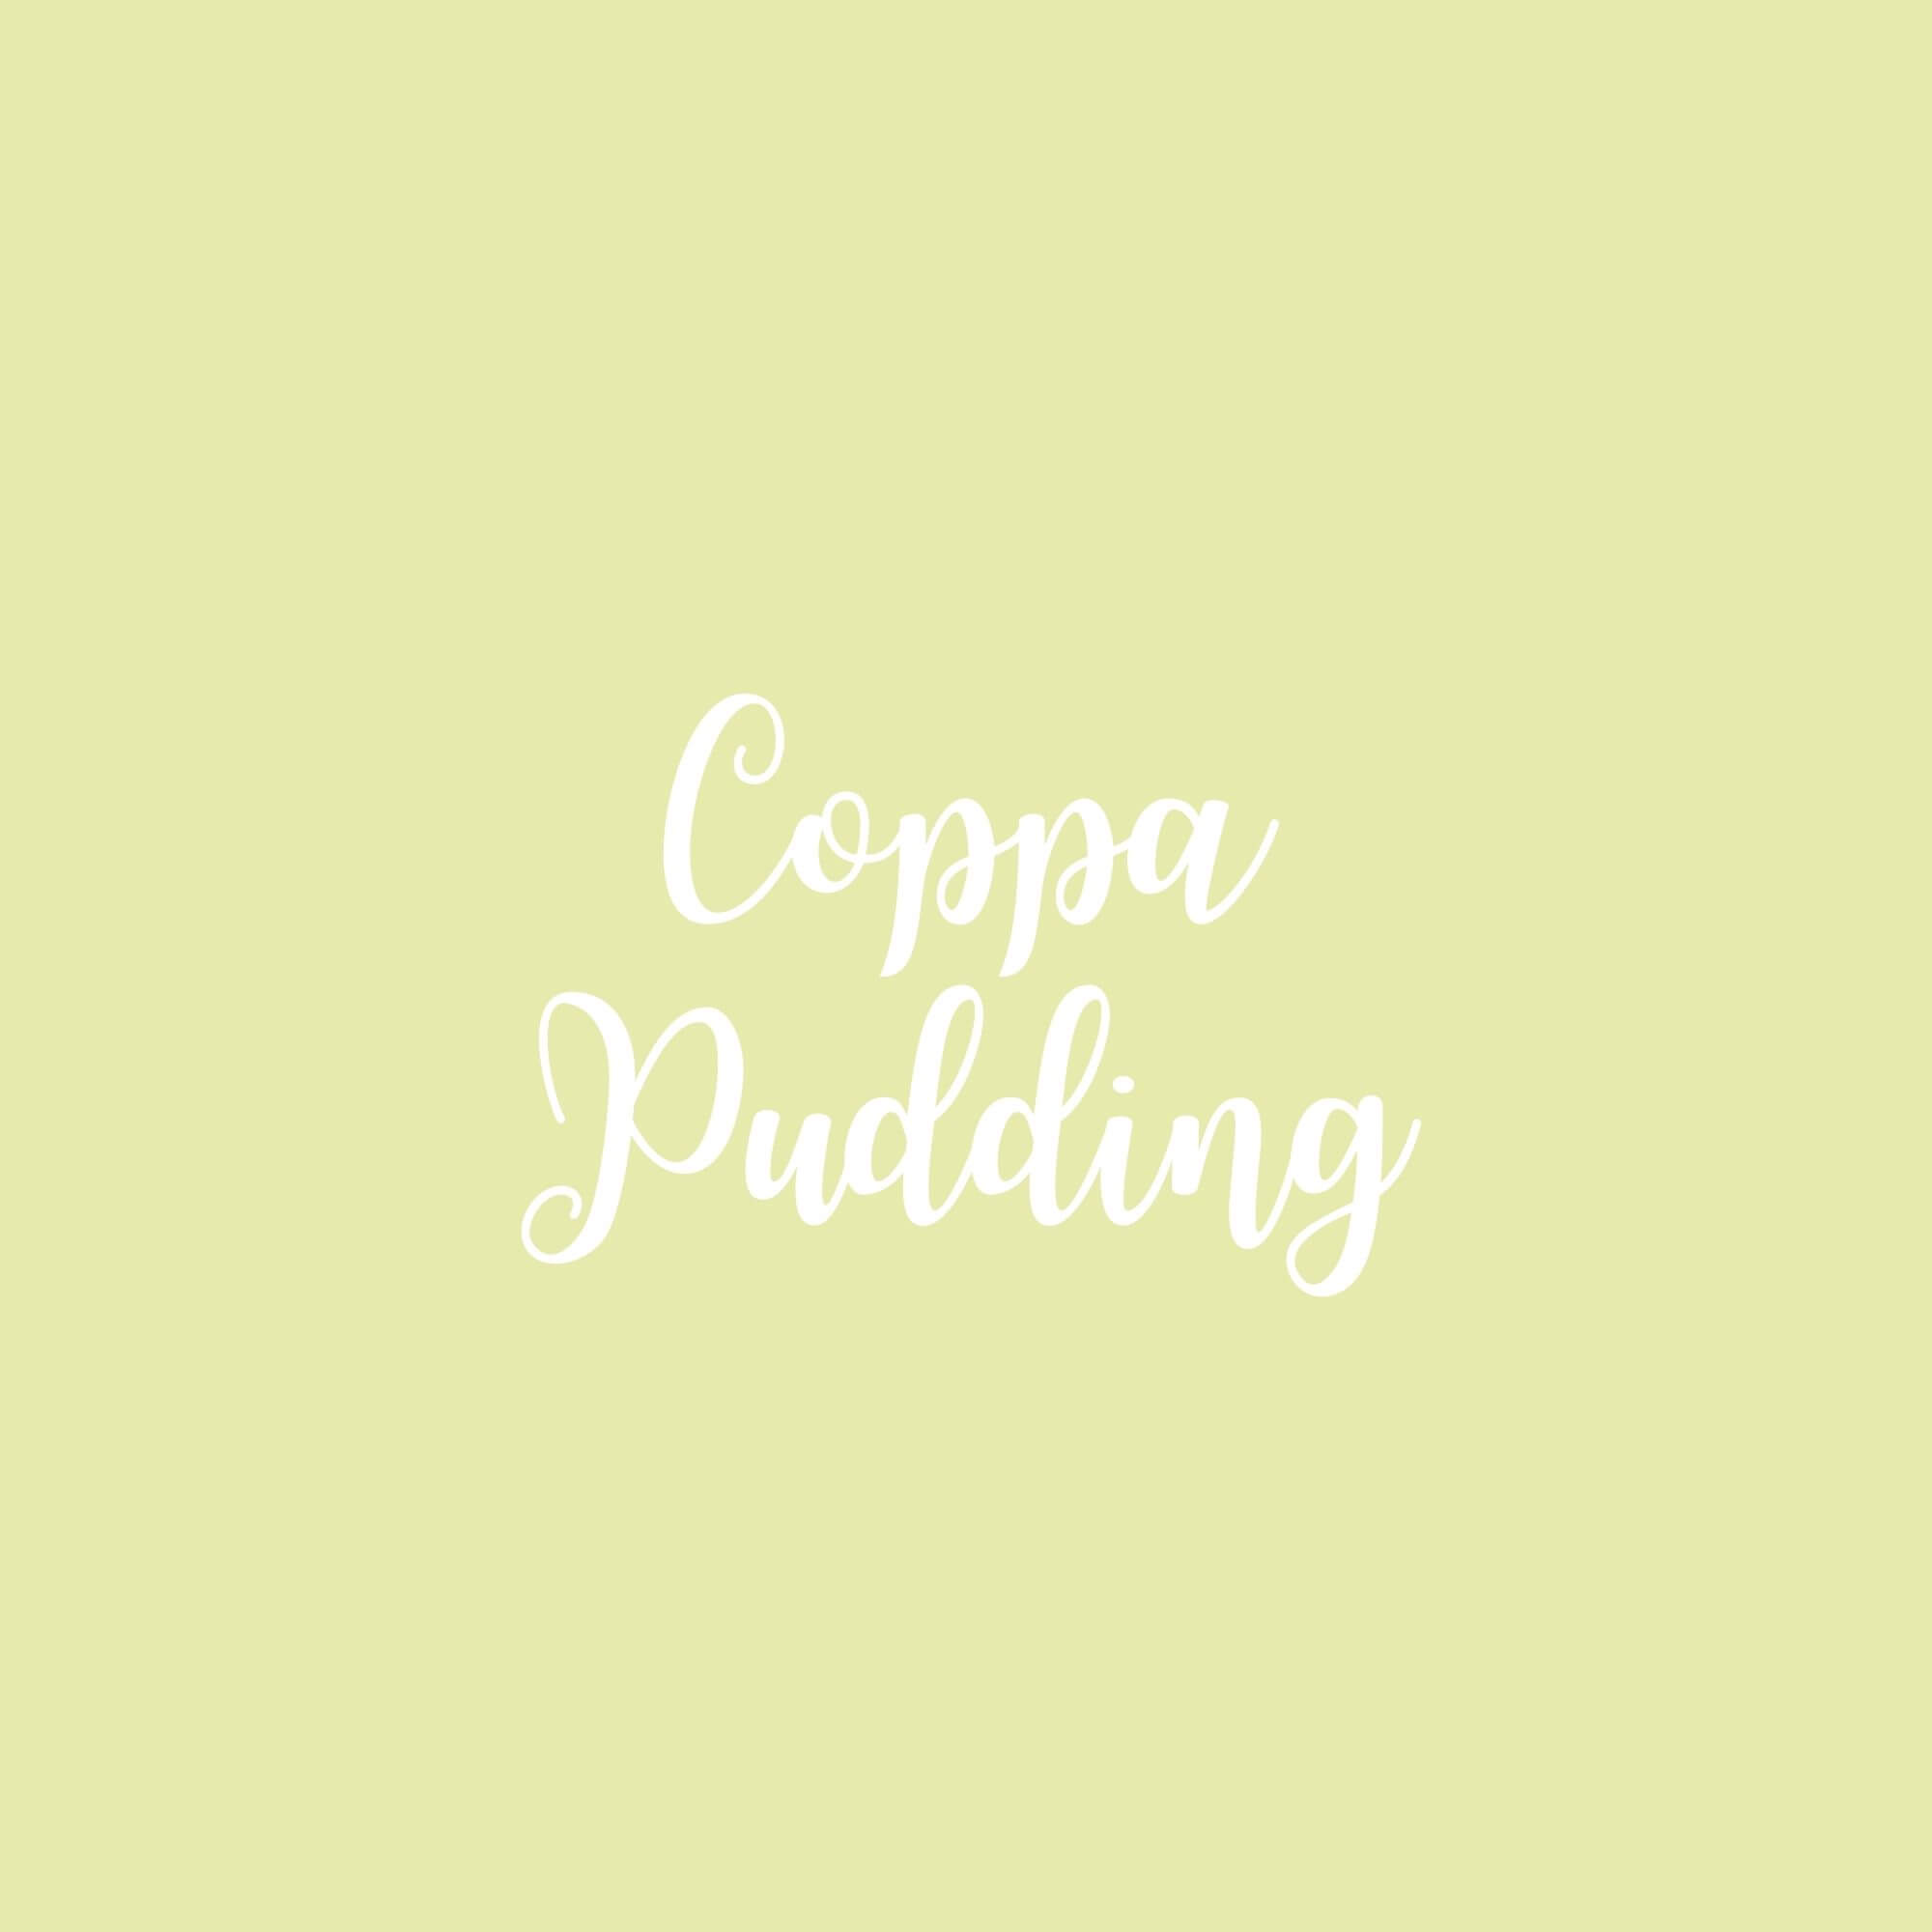 Coppa Pudding